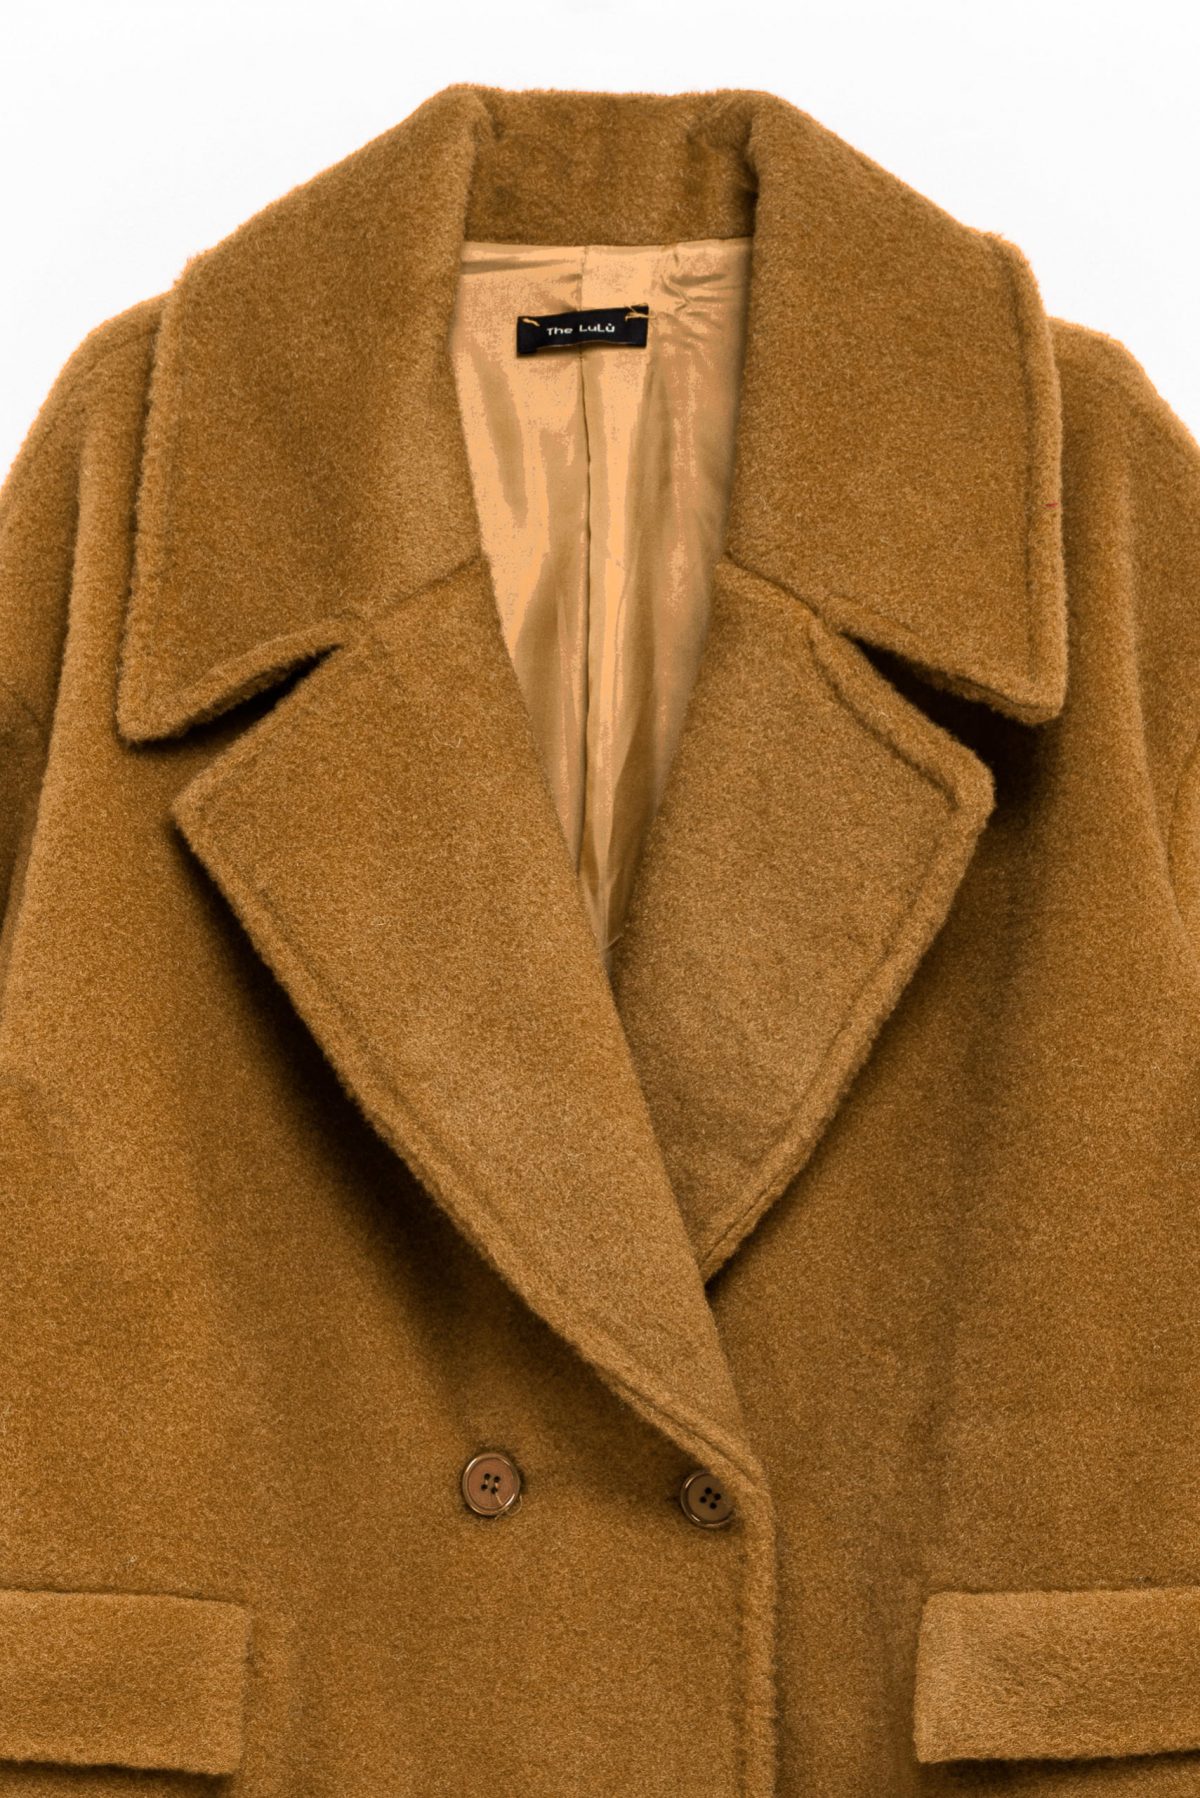 Woolen Long Coat in brown  color